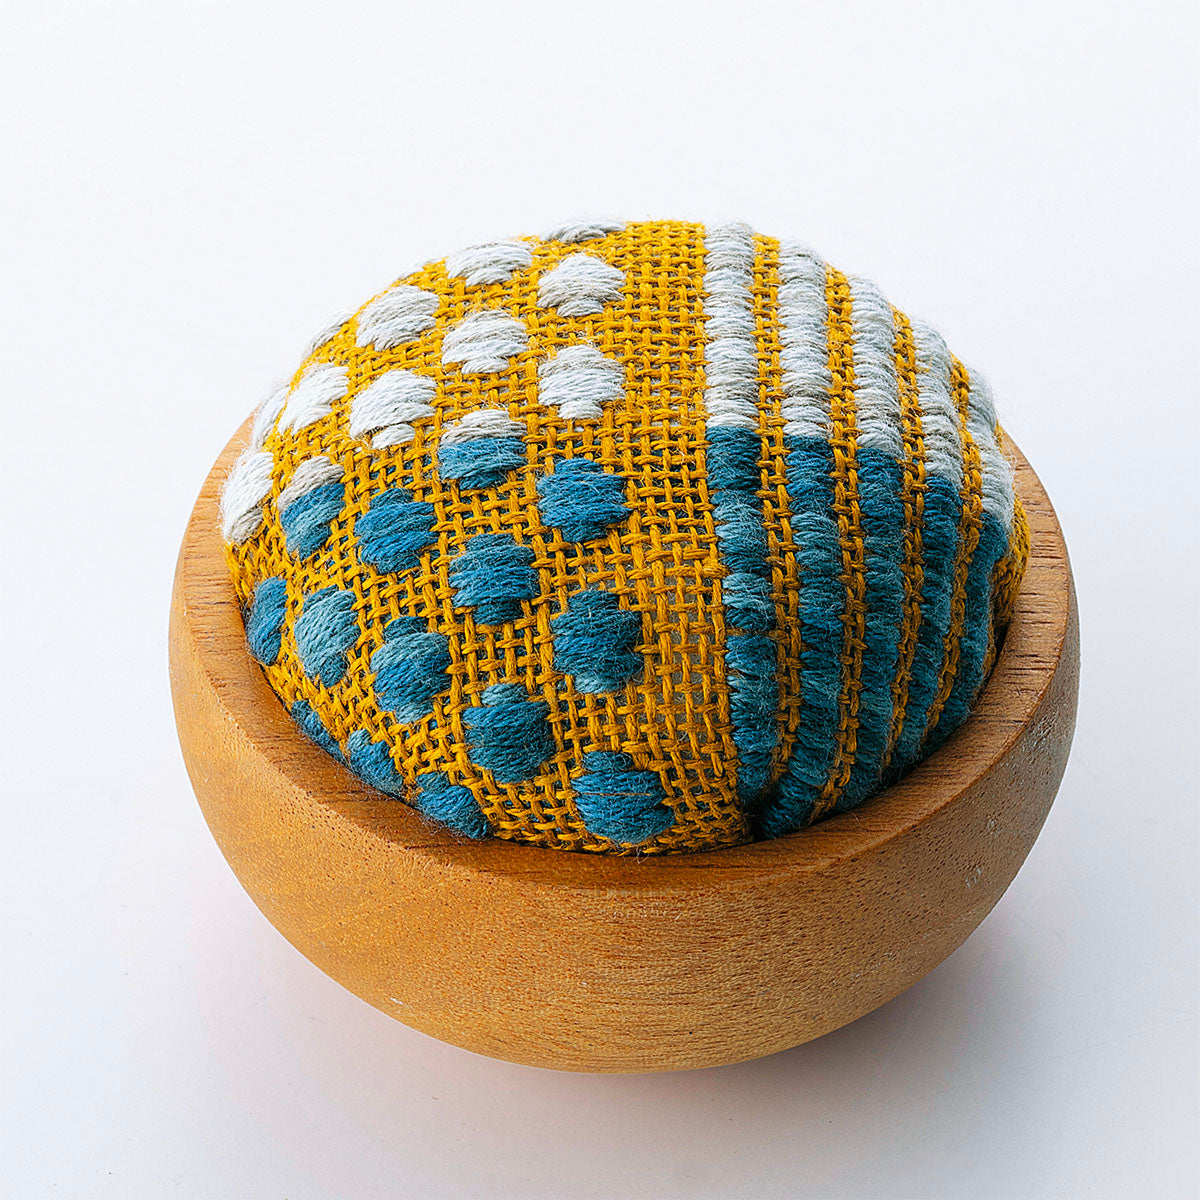 Kogin Embroidery Pincushion Bowl Kit - Stitched Modern